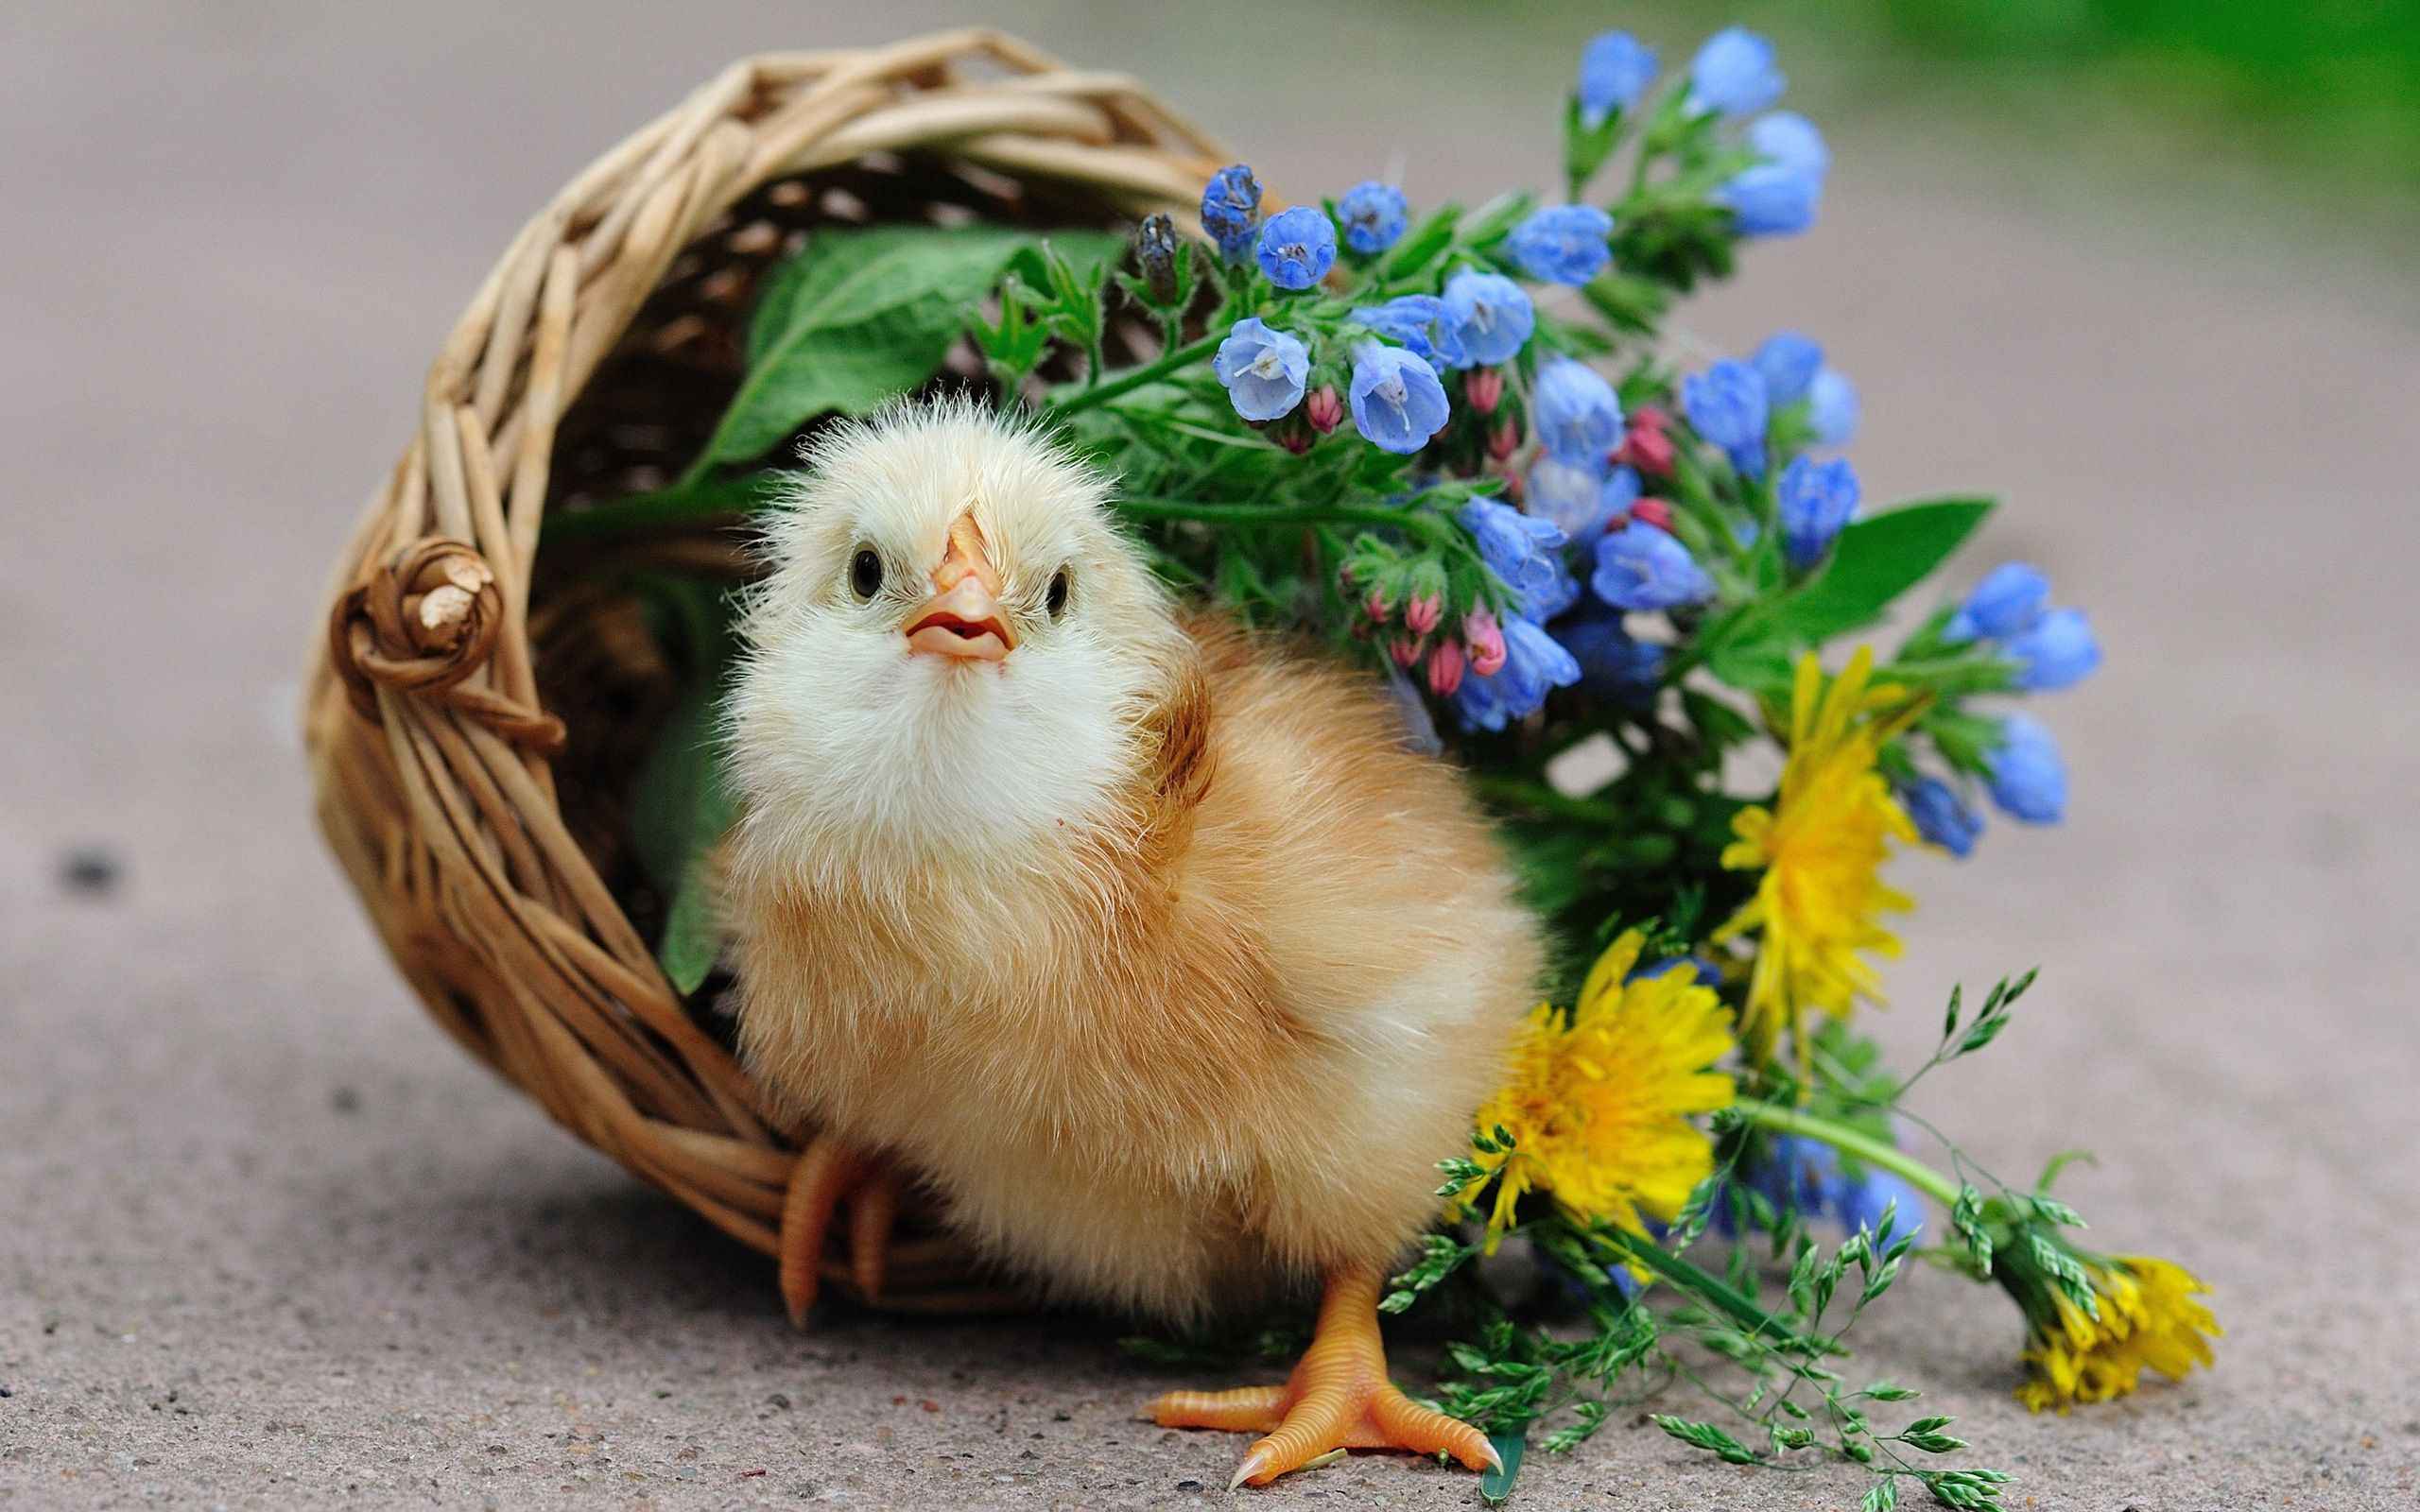 Wallpaper chicken, bird, basket, flower, dandelion, chick desktop